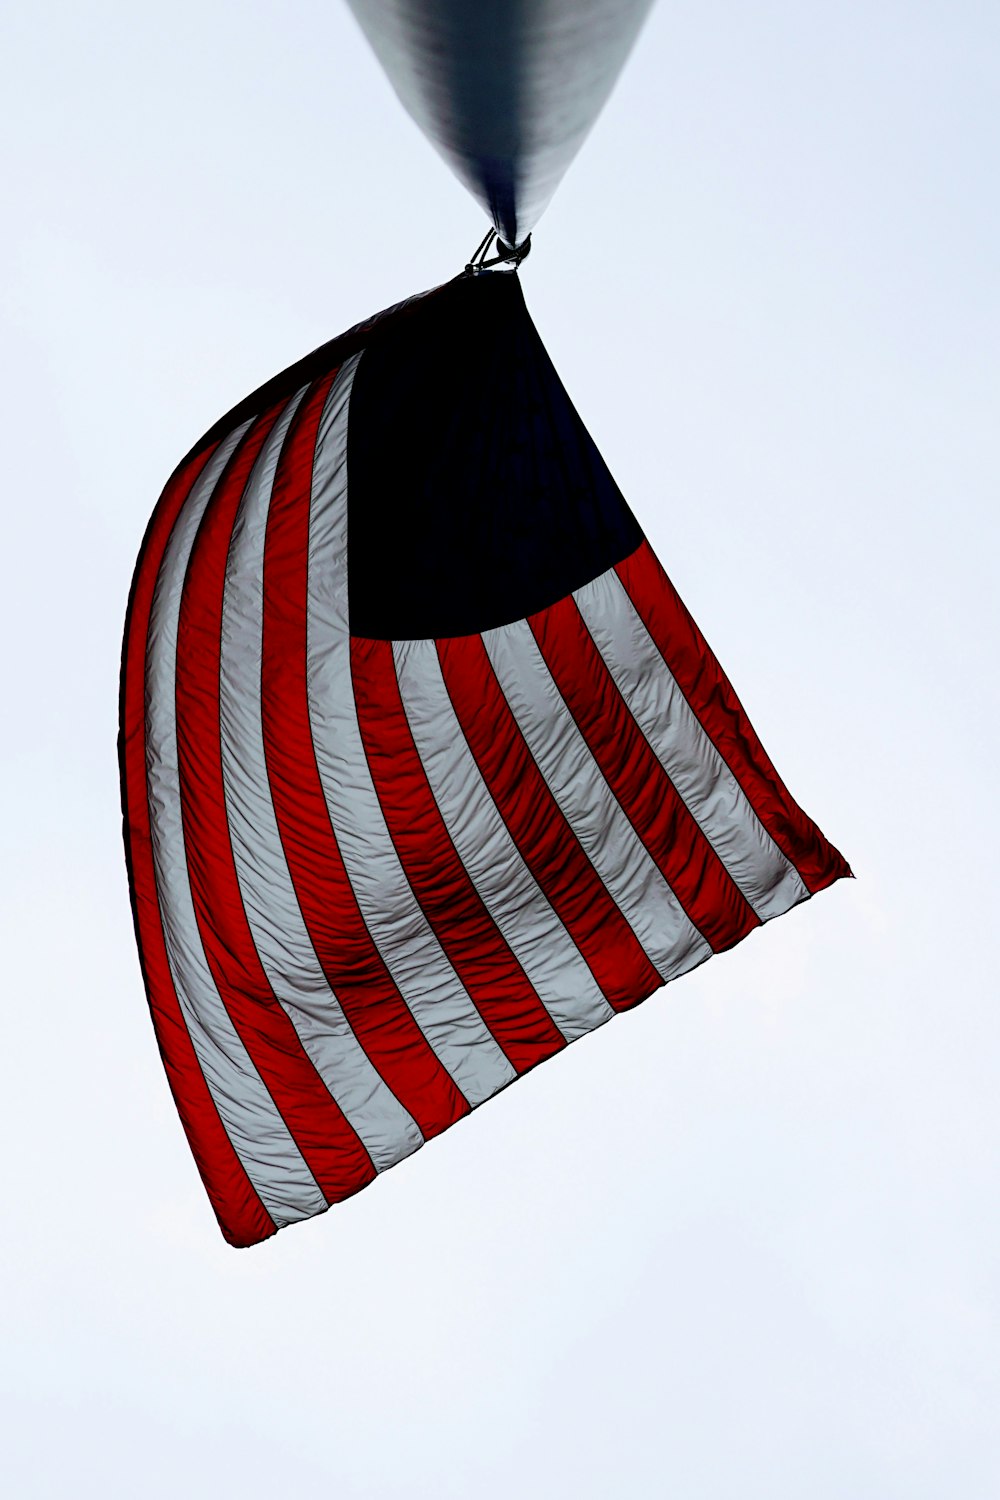 Drapeau des États-Unis d’Amérique sur un poteau en métal noir pendant la journée